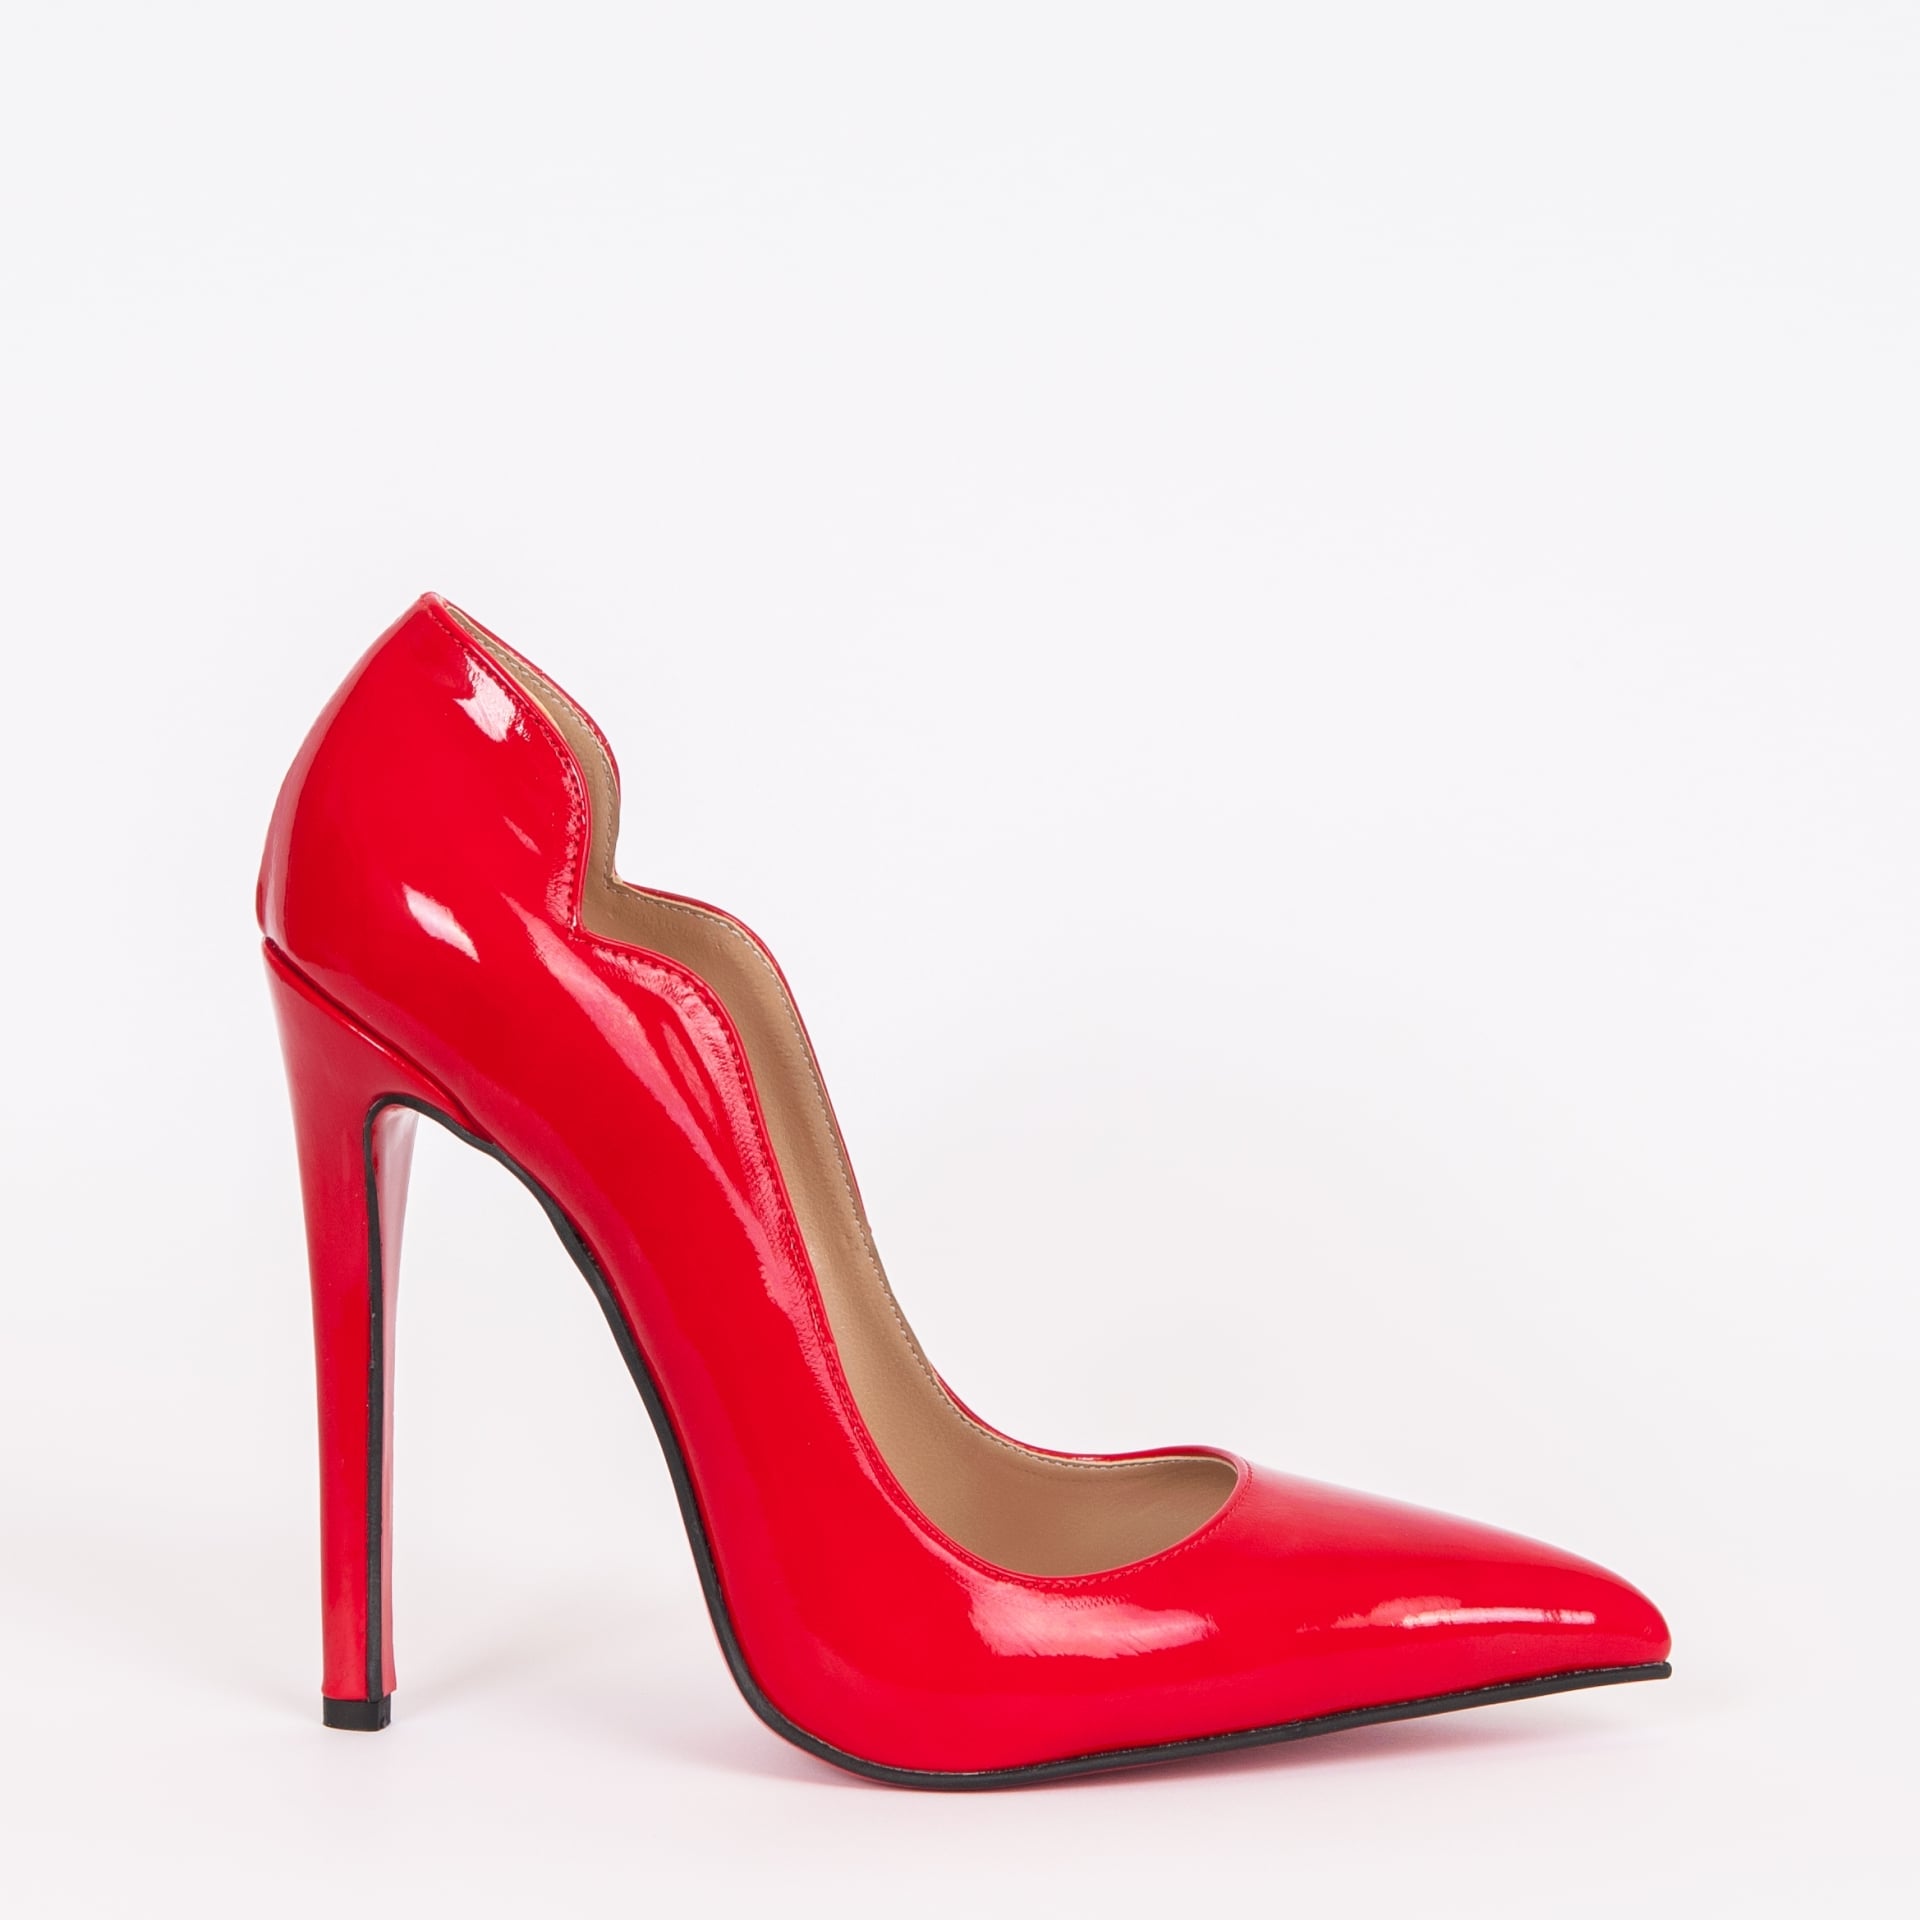 Дамски обувки LOVE червен лак с ток 12 см.